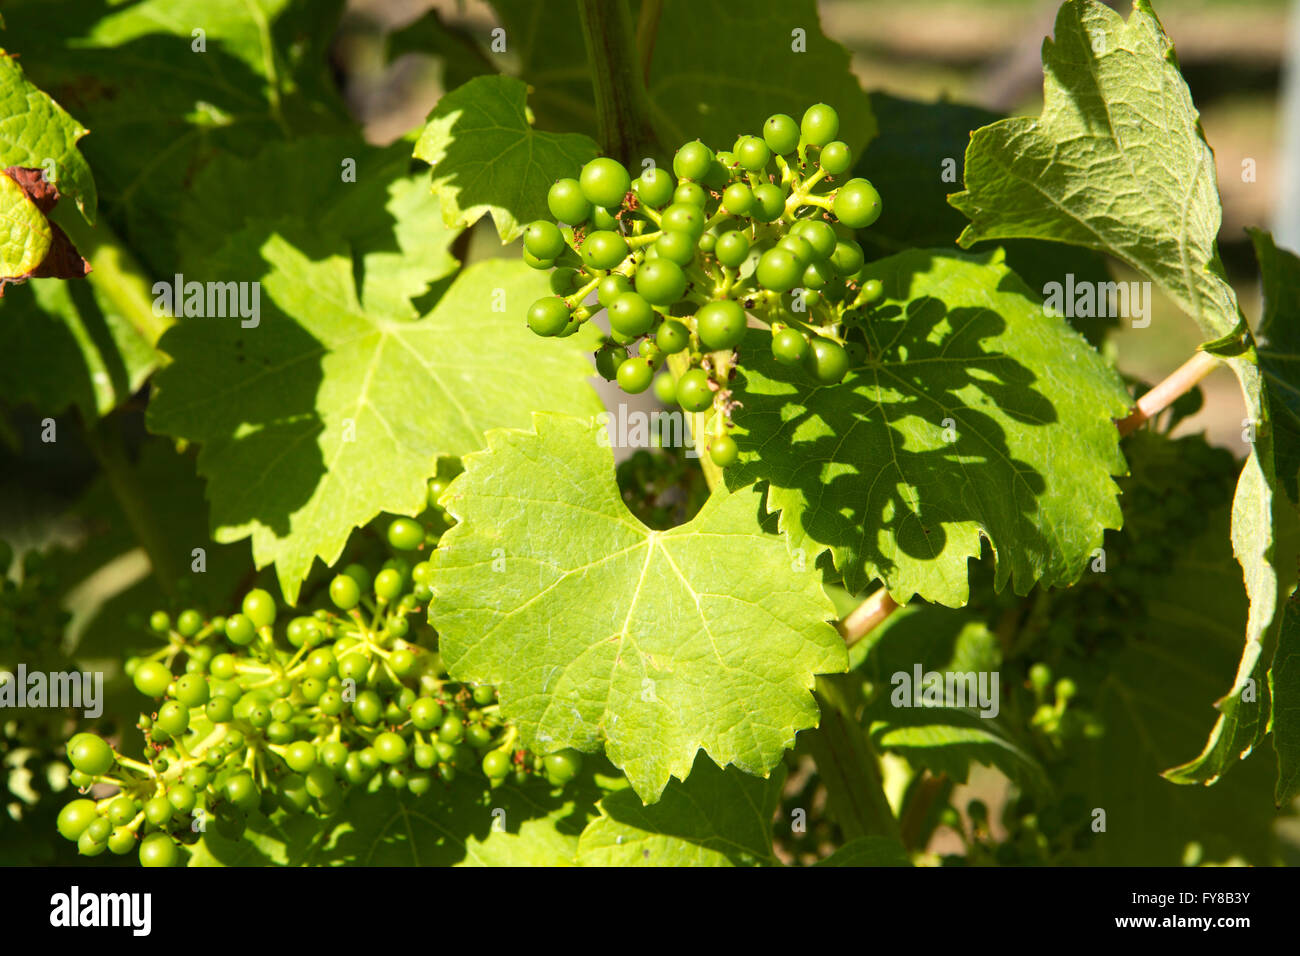 Regno Unito, Kent, Smallhythe, Cappella giù vigneto, uva che cresce sulla vite per rendere frizzante vino britannico Foto Stock